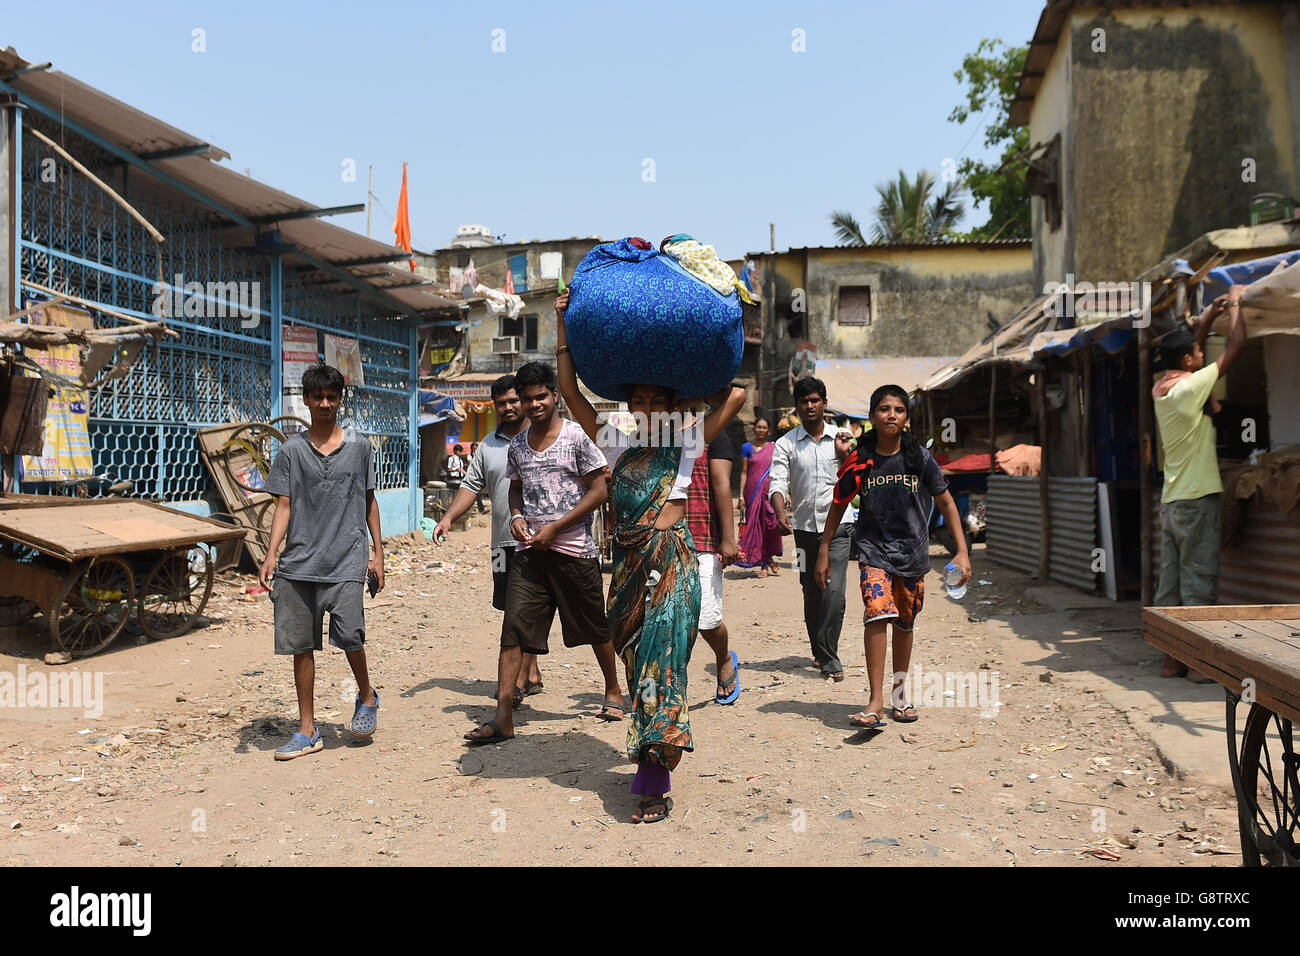 People walk through the Ambedkar Nagar district of Mumbai, India. Stock Photo